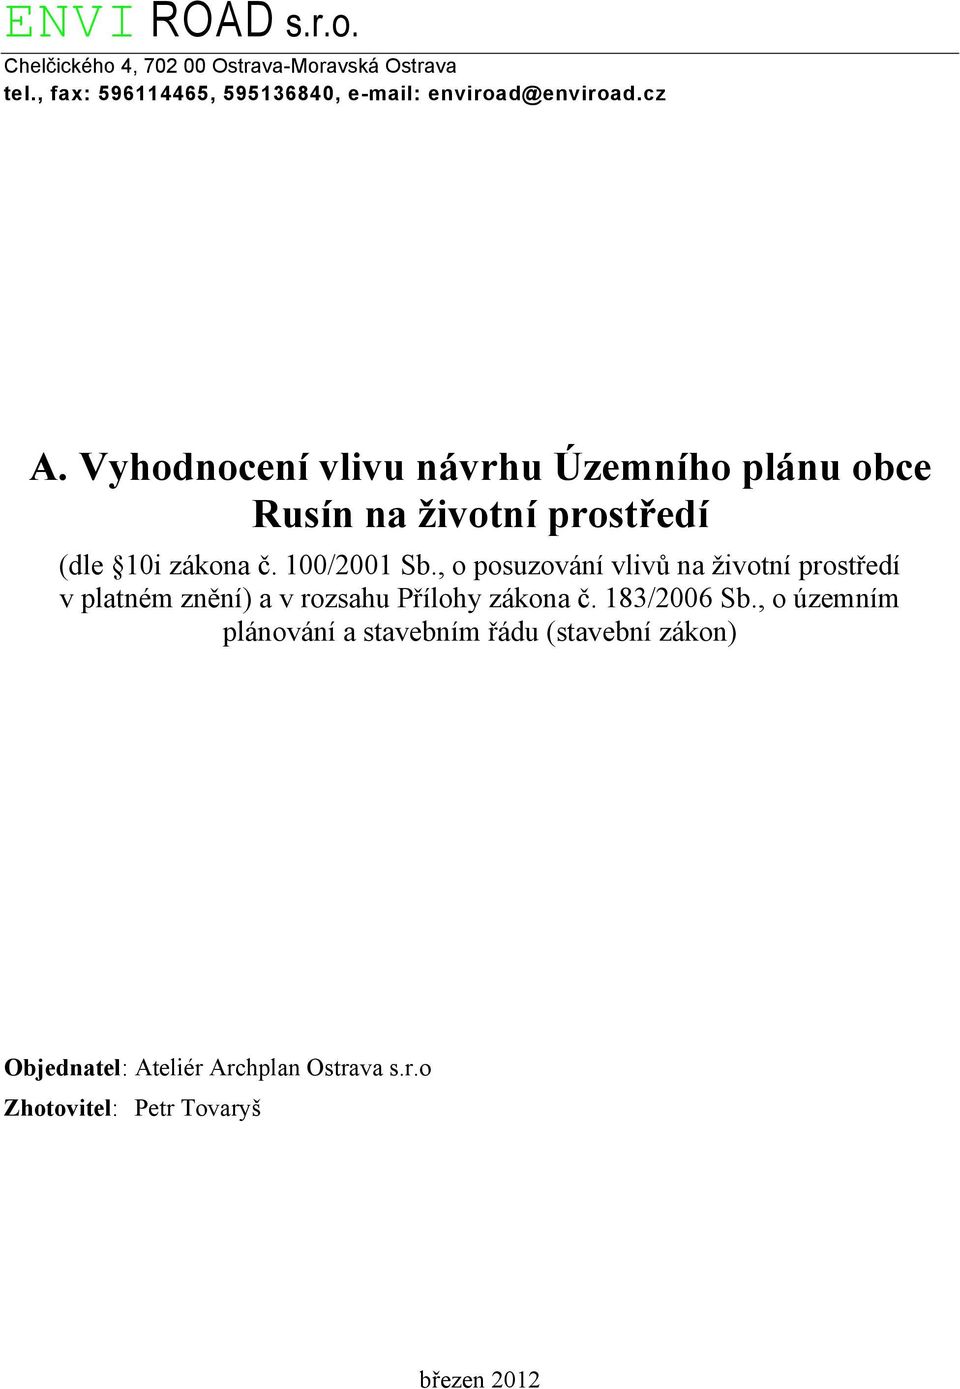 Vyhodnocení vlivu návrhu Územního plánu obce Rusín na životní prostředí (dle 10i zákona č. 100/2001 Sb.